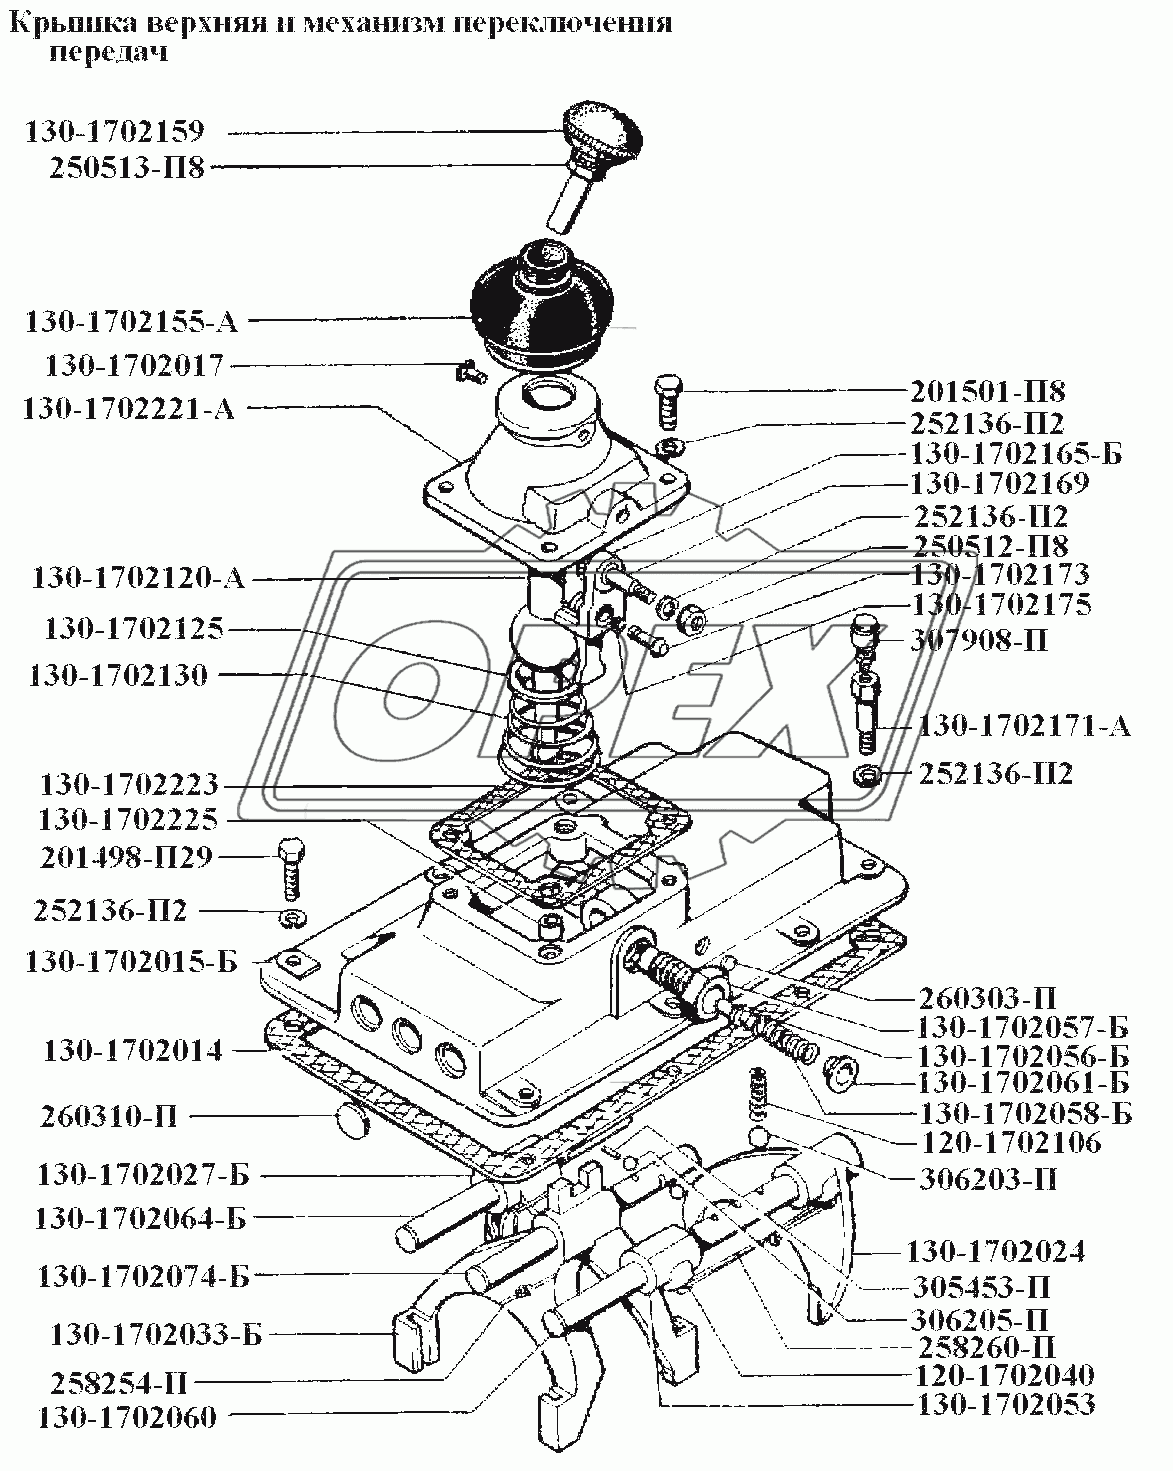 Крышка верхняя и механизм переключения передач